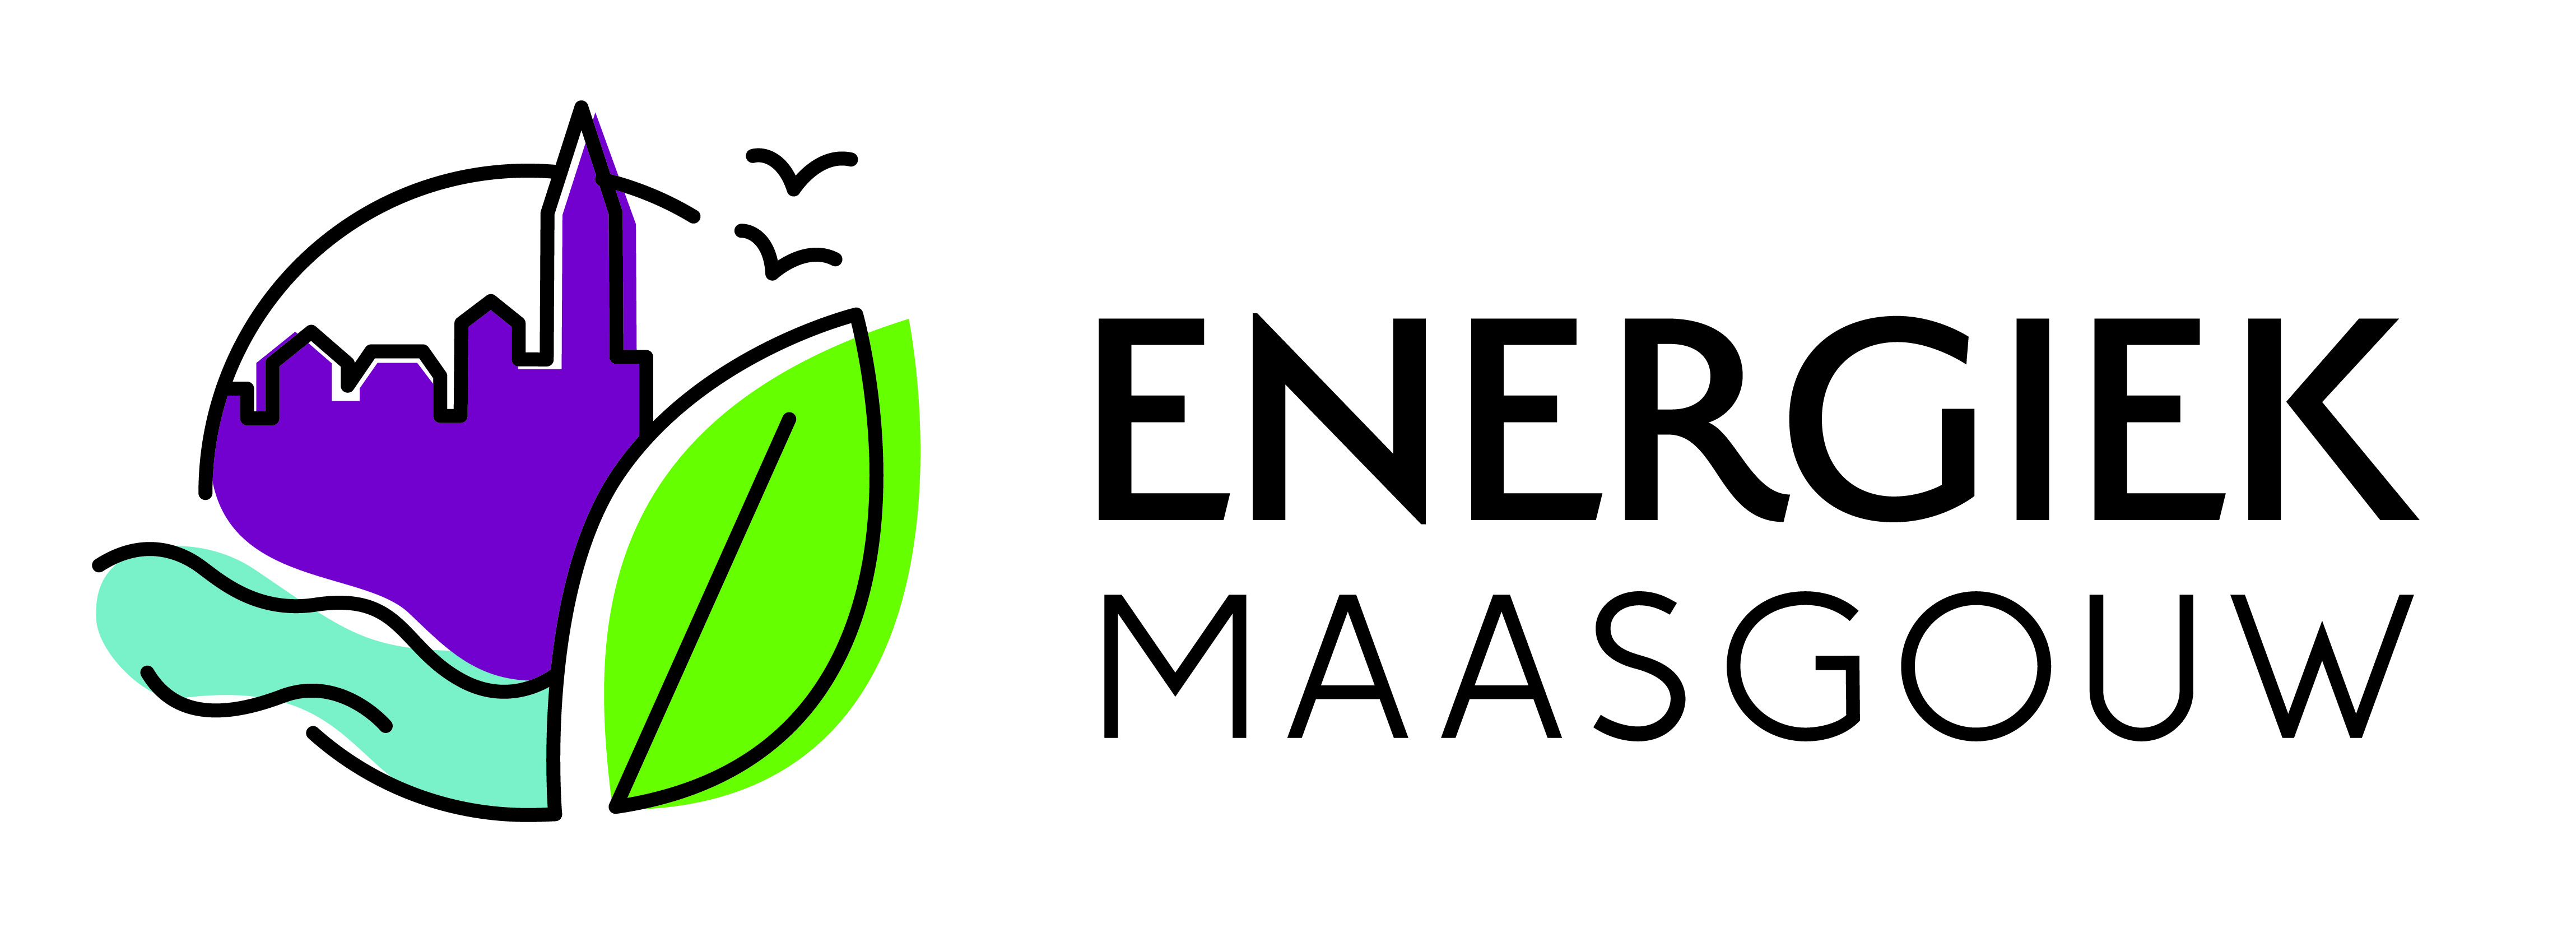 Energiek Maasgouw logo